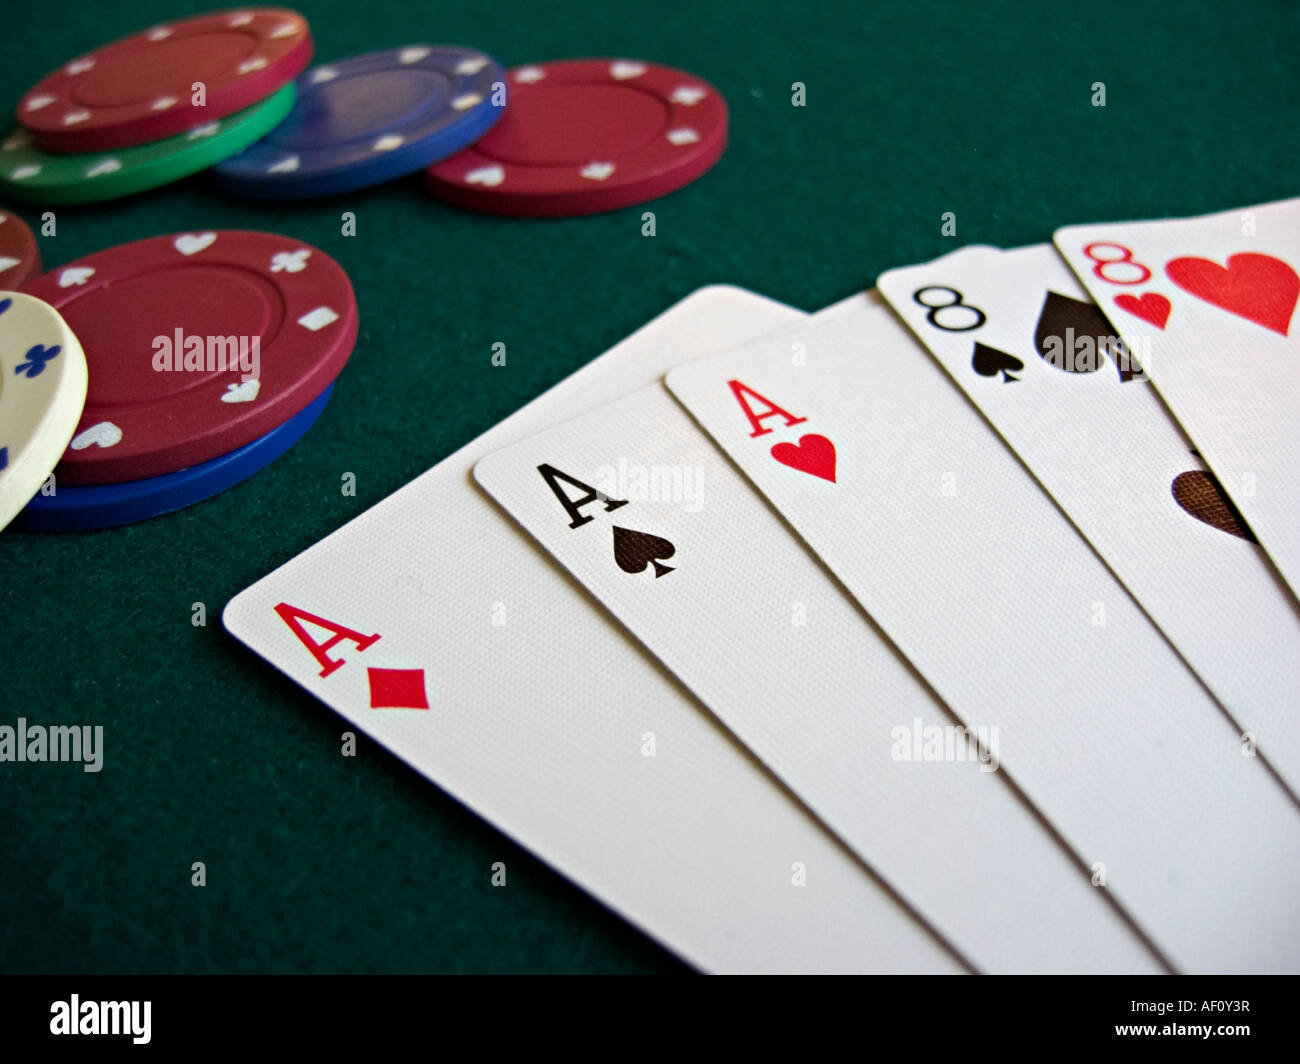 Mano di Poker, Full House, Aces su Ottavi con le carte ventaglio su un feltro verde il piano portapaziente che contiene anche un paio di poker chips Foto Stock